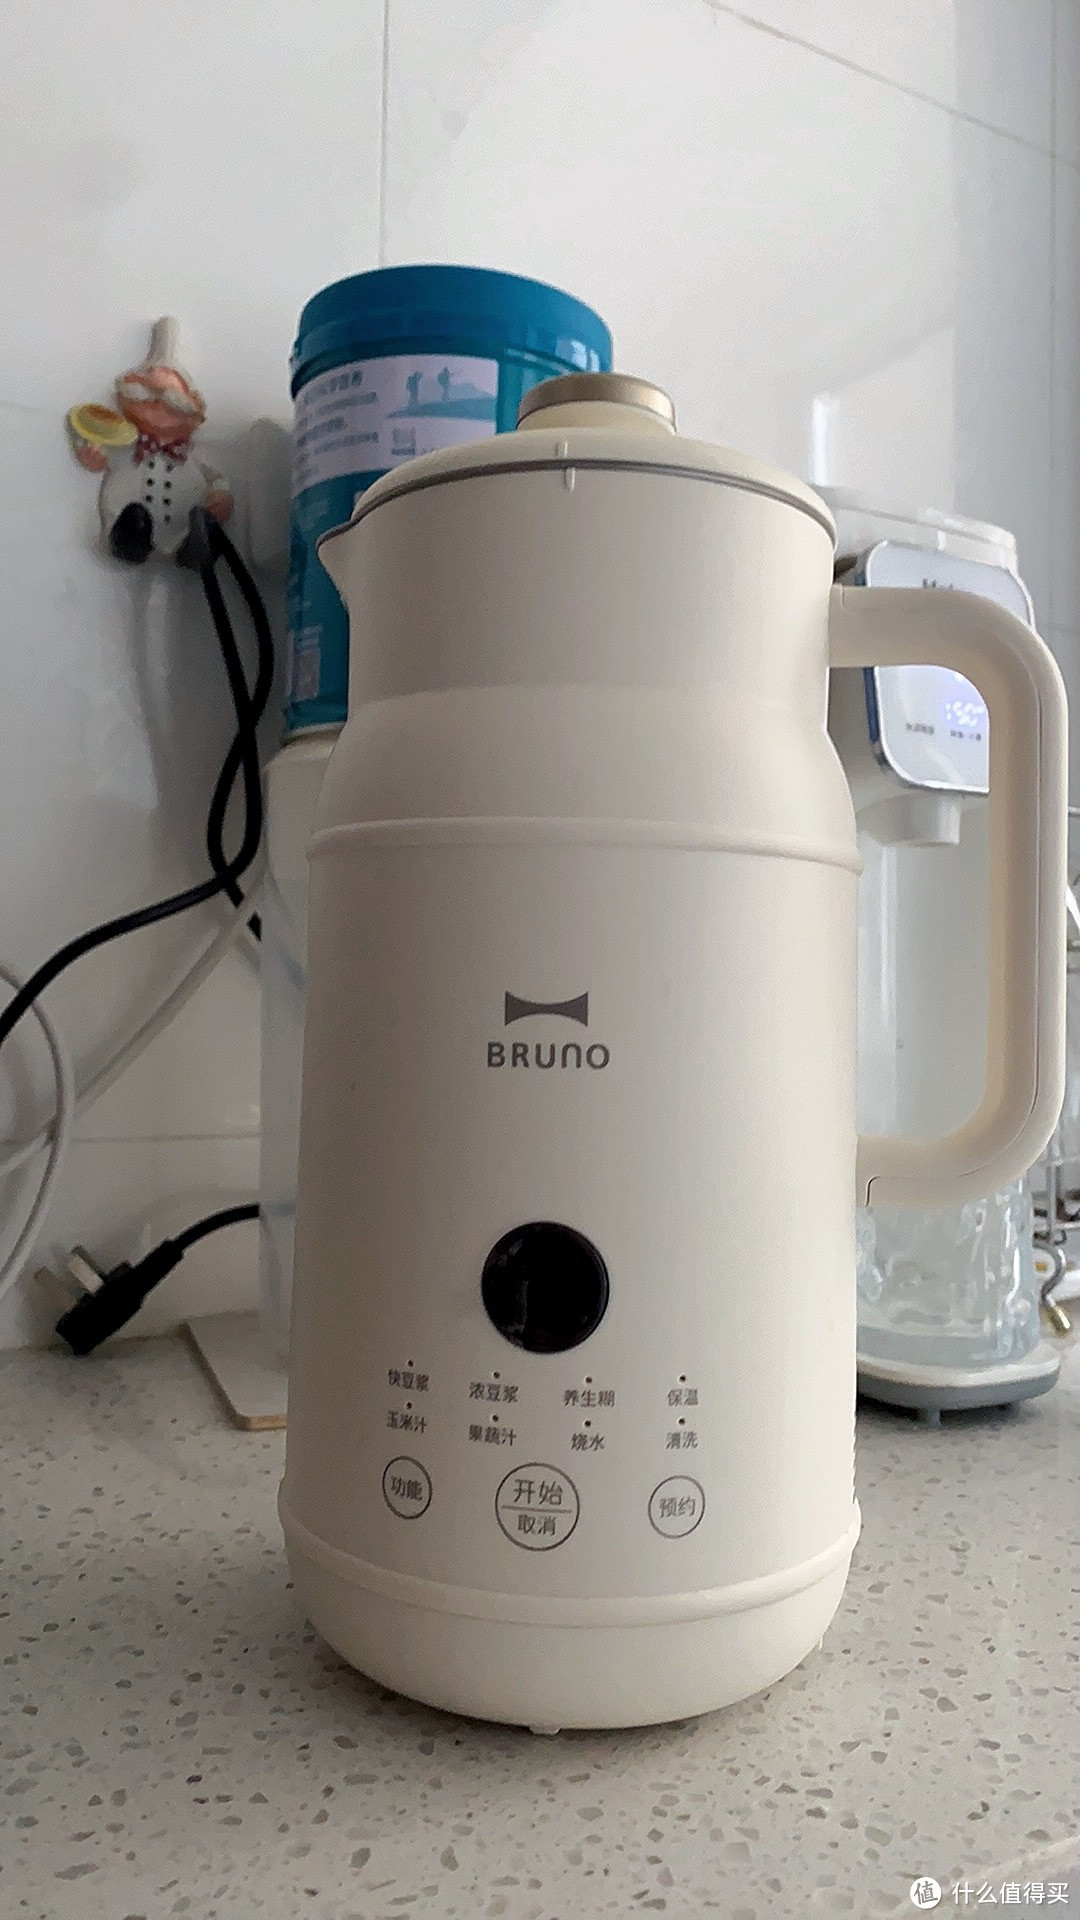 BRUNO小奶壶豆浆机